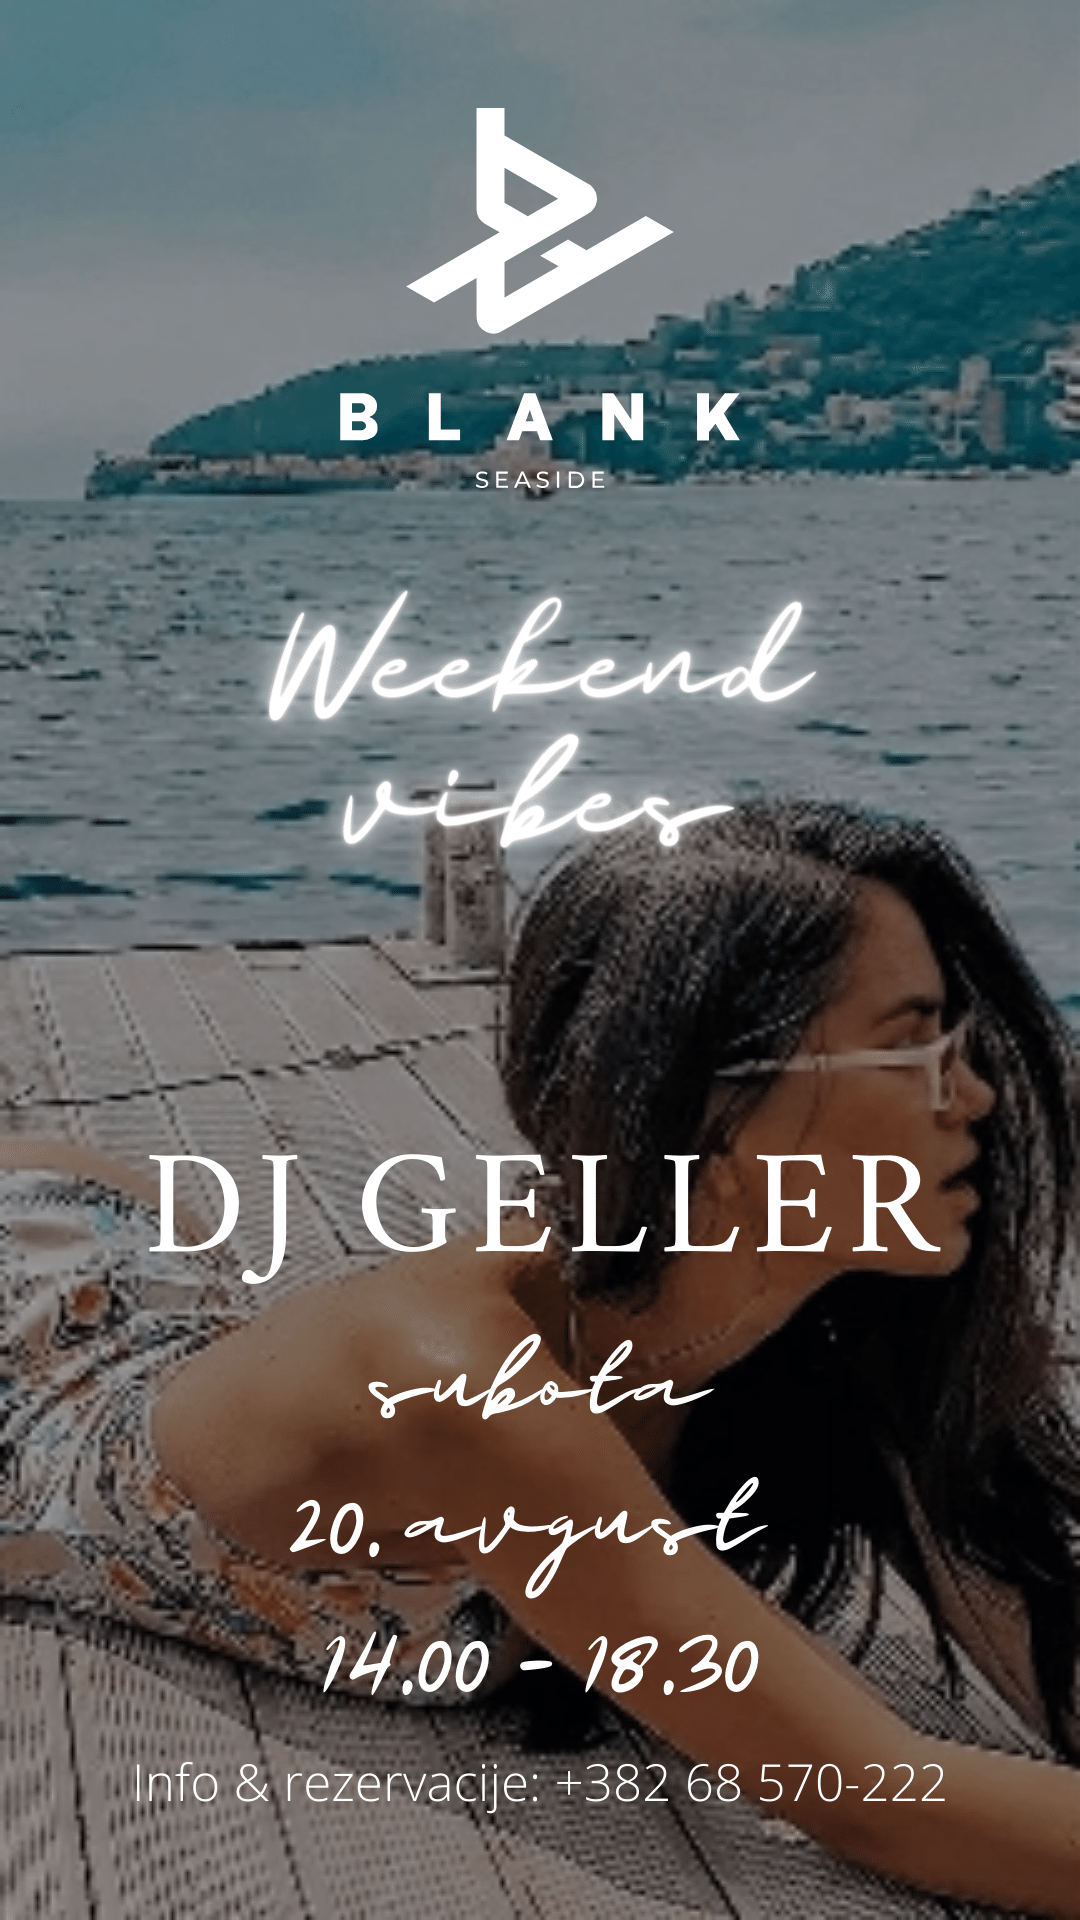 DJ Geller